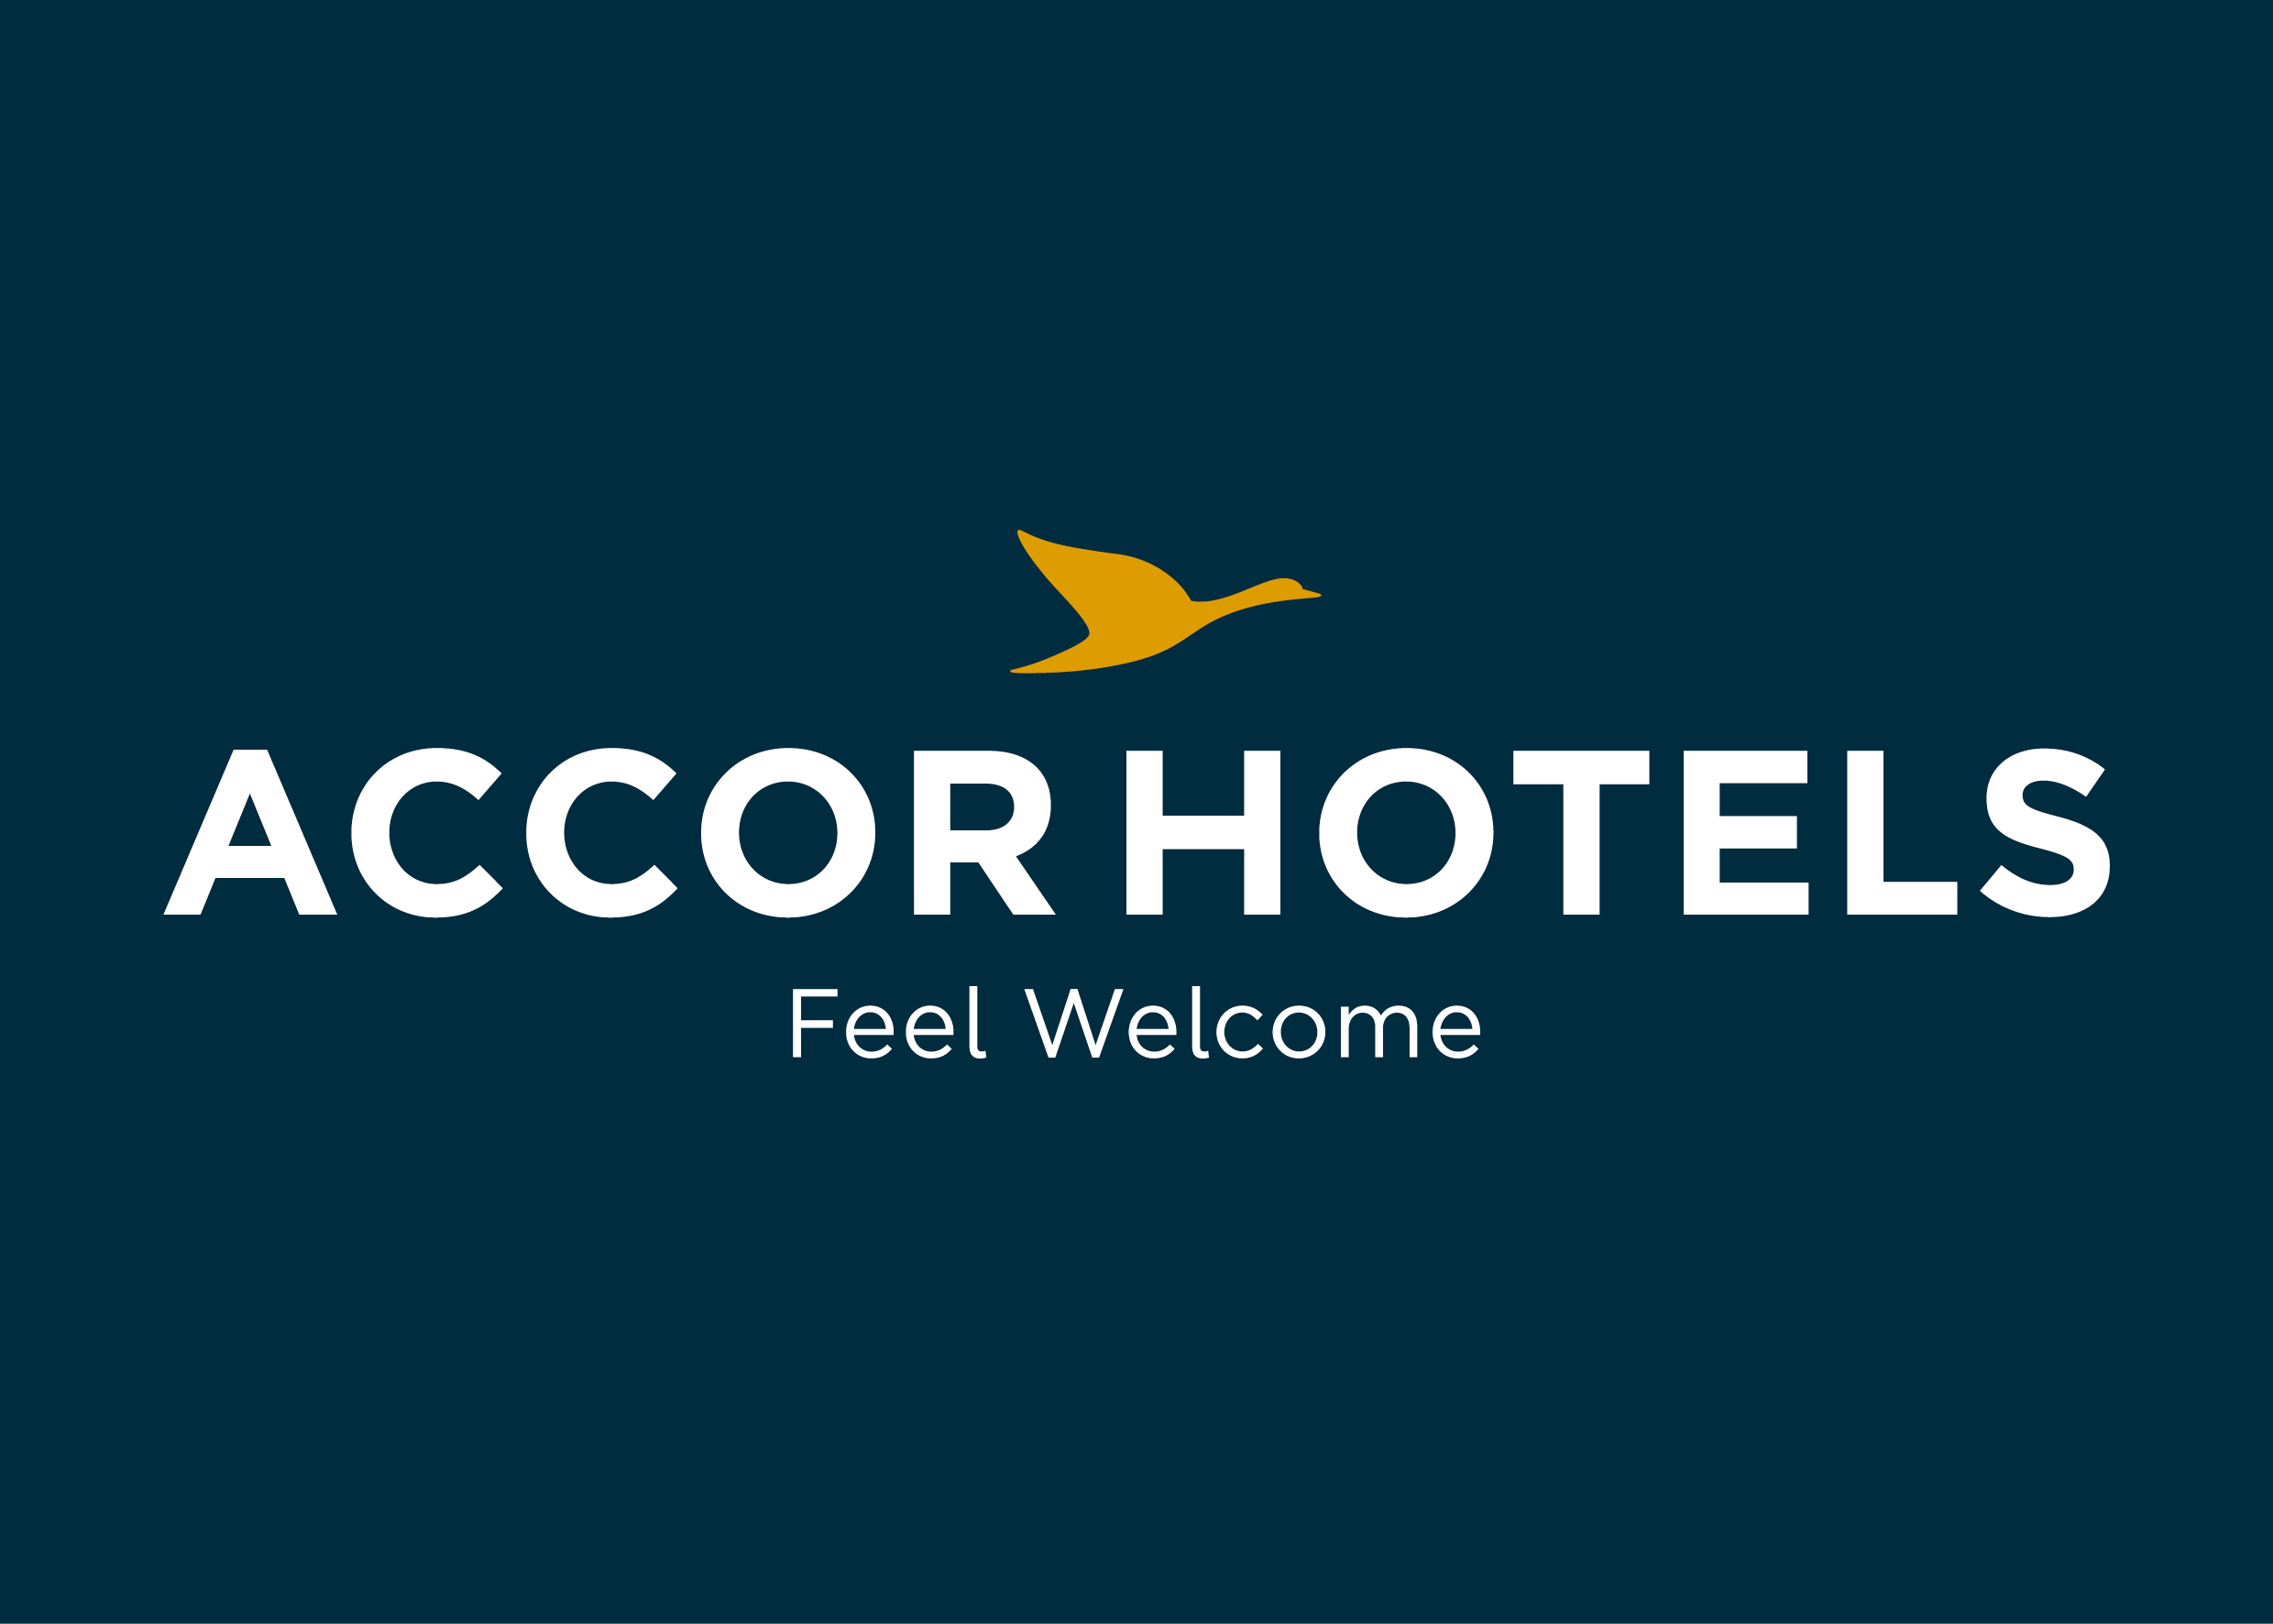 plus de la moitié des hôtels sous enseigne Accor sont fermés, et deux tiers devraient l’être dans les semaines à venir /crédit Accor